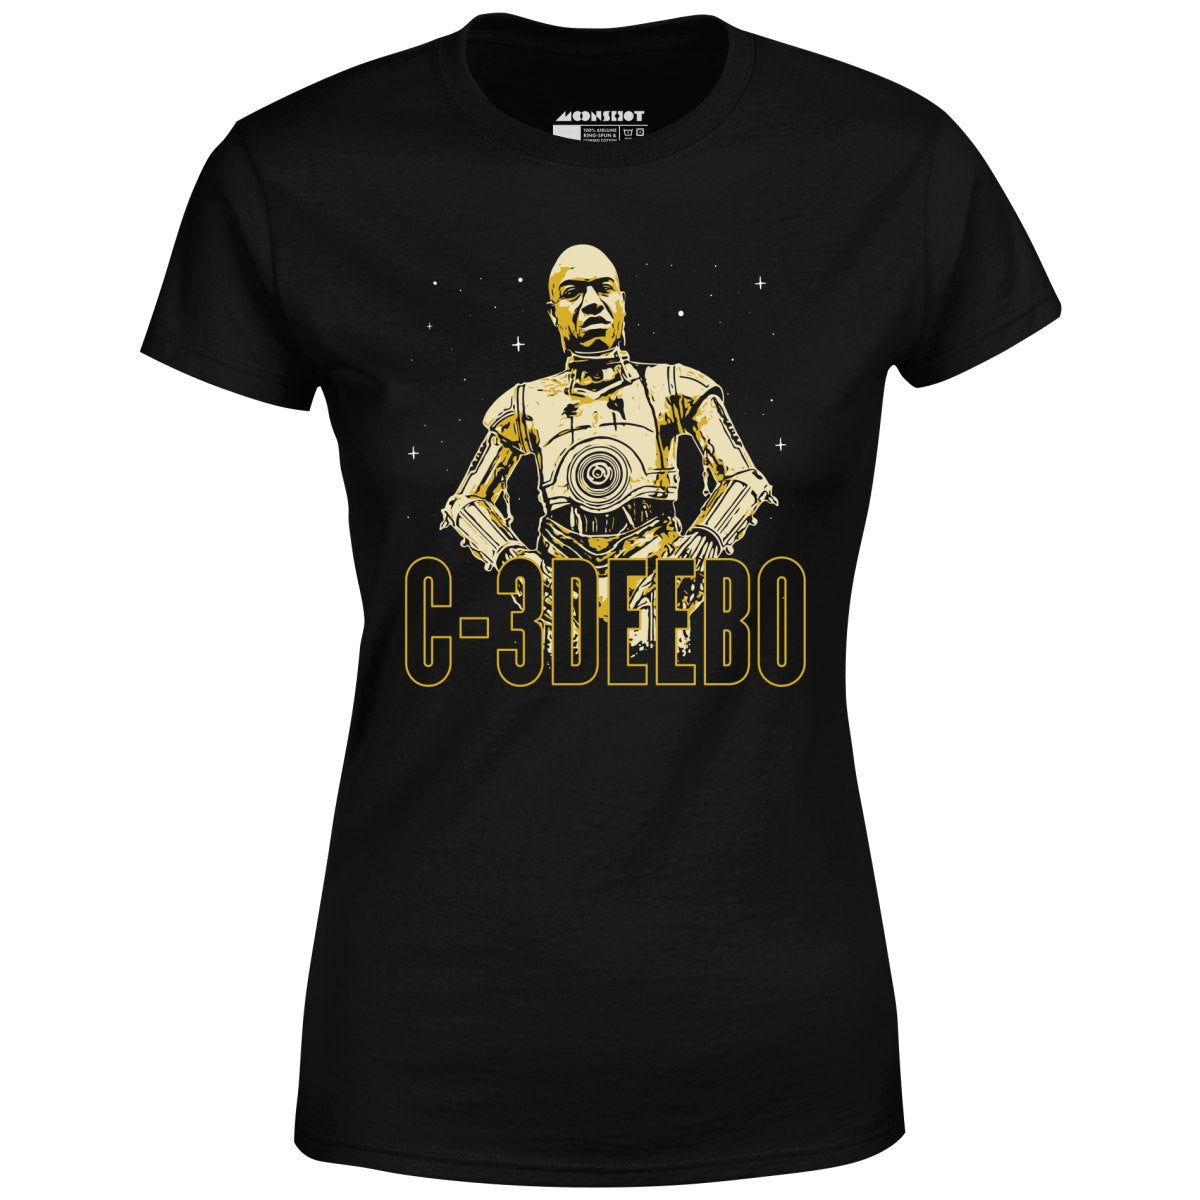 C-3DEEBO - Women's T-Shirt